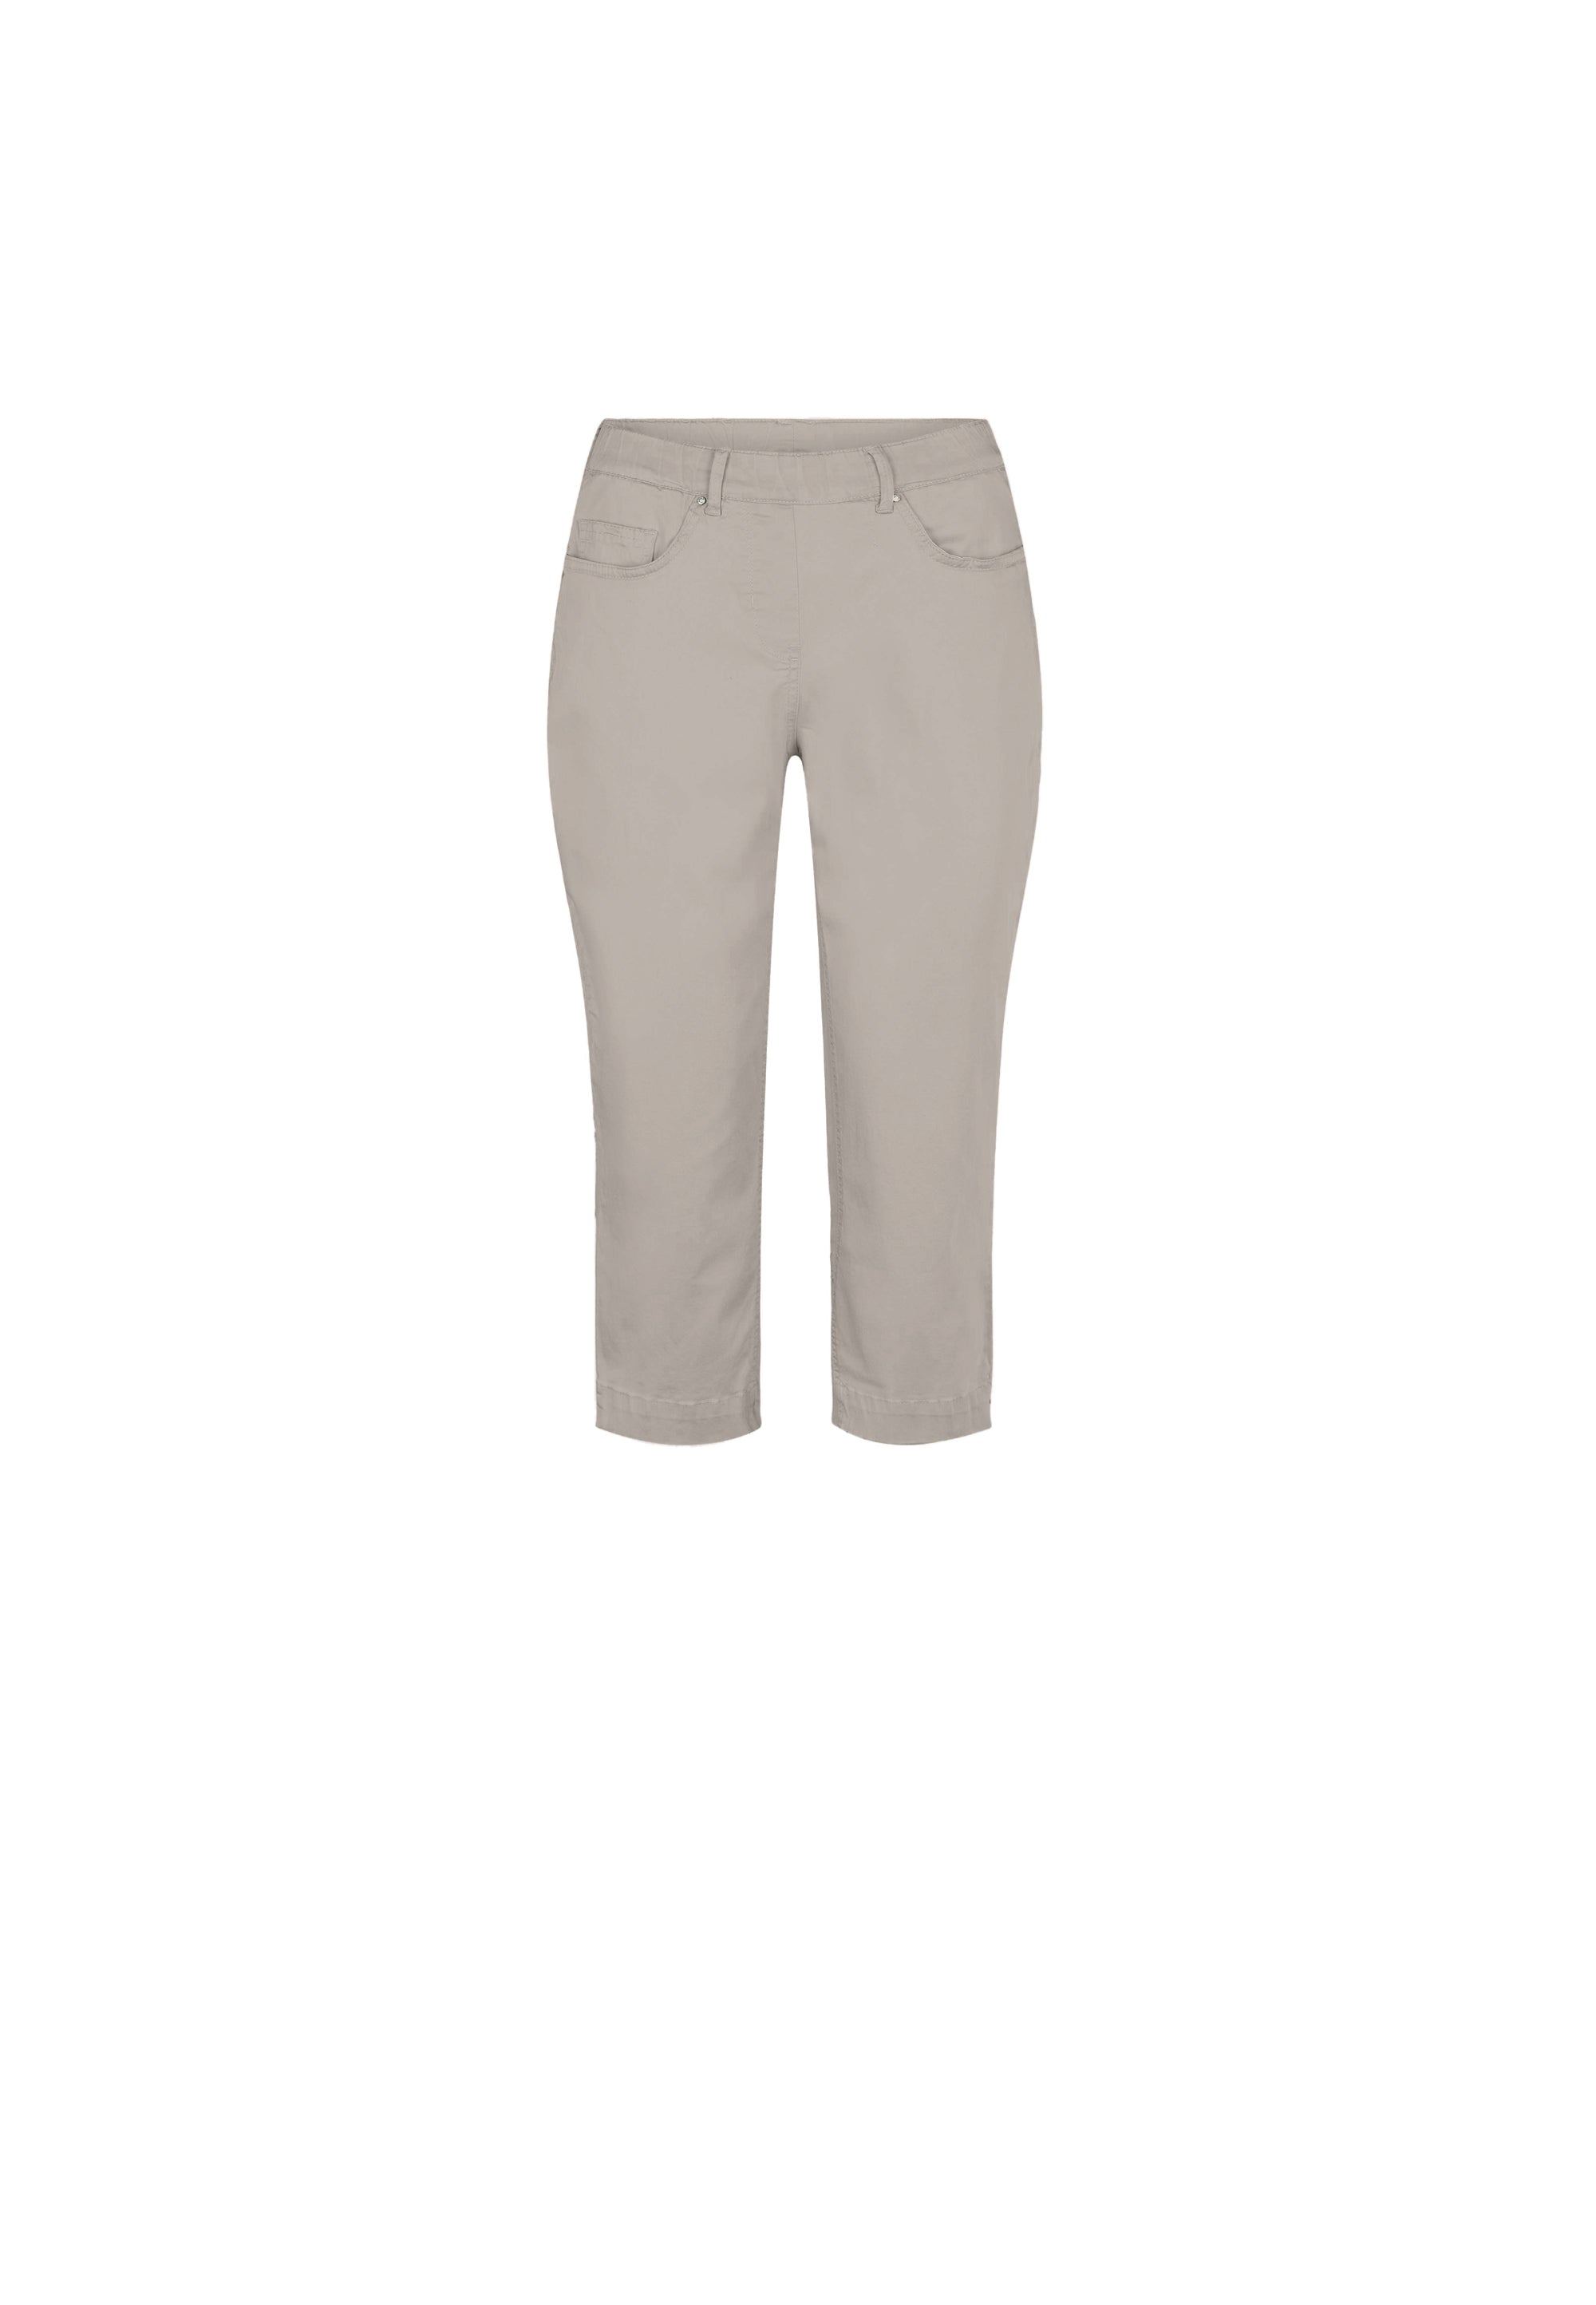 LAURIE Hannah Regular Bukser Capri Trousers REGULAR 25102 Grey Sand